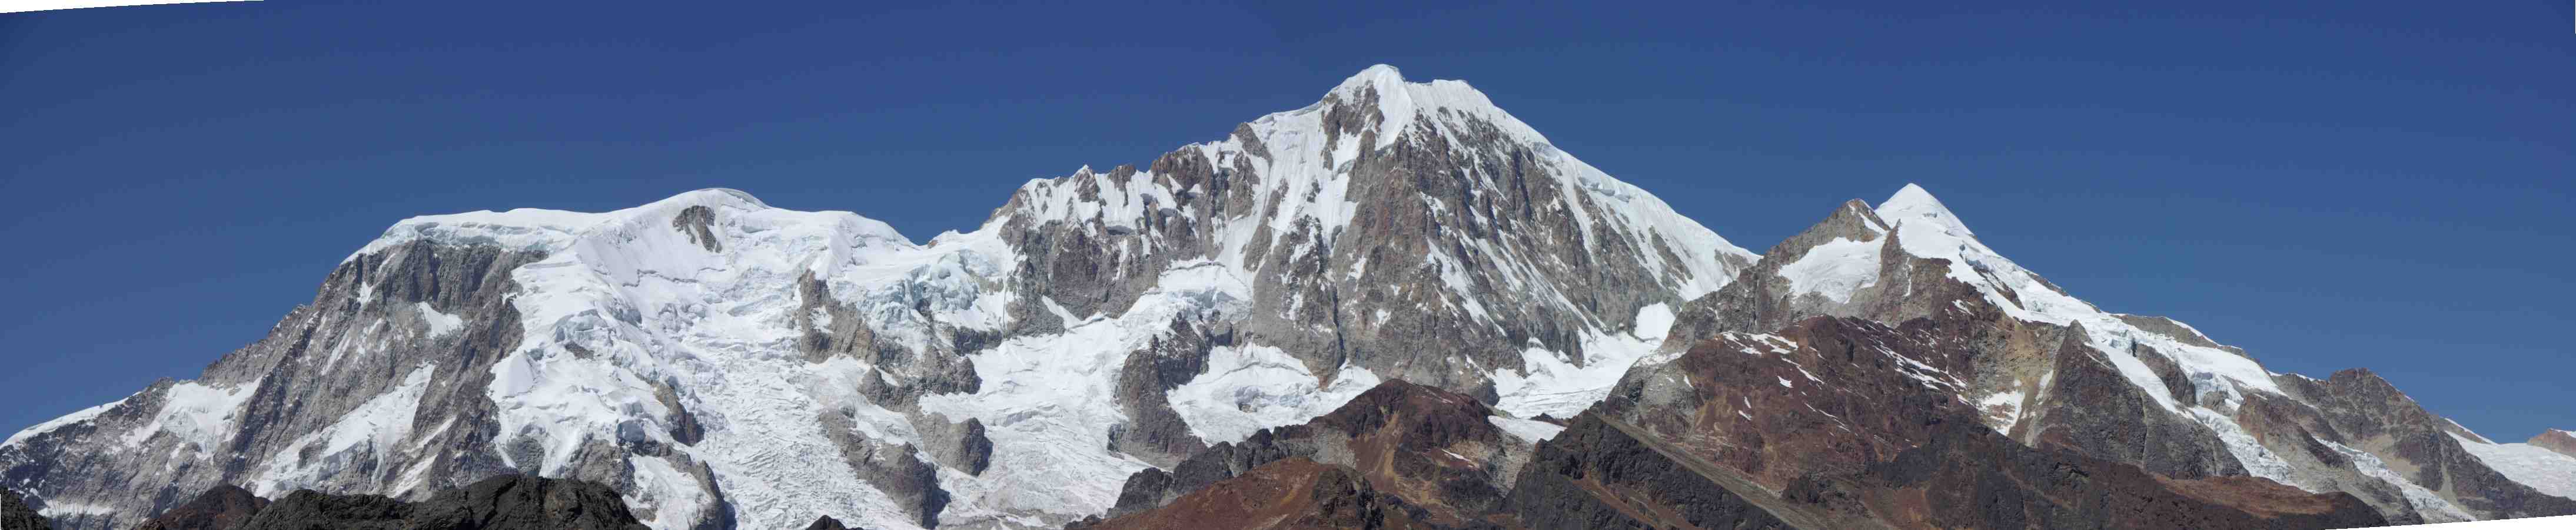 Le Pico del Norte (6070 m) vu depuis le col Illampu (4741 m), le 3 août 2008